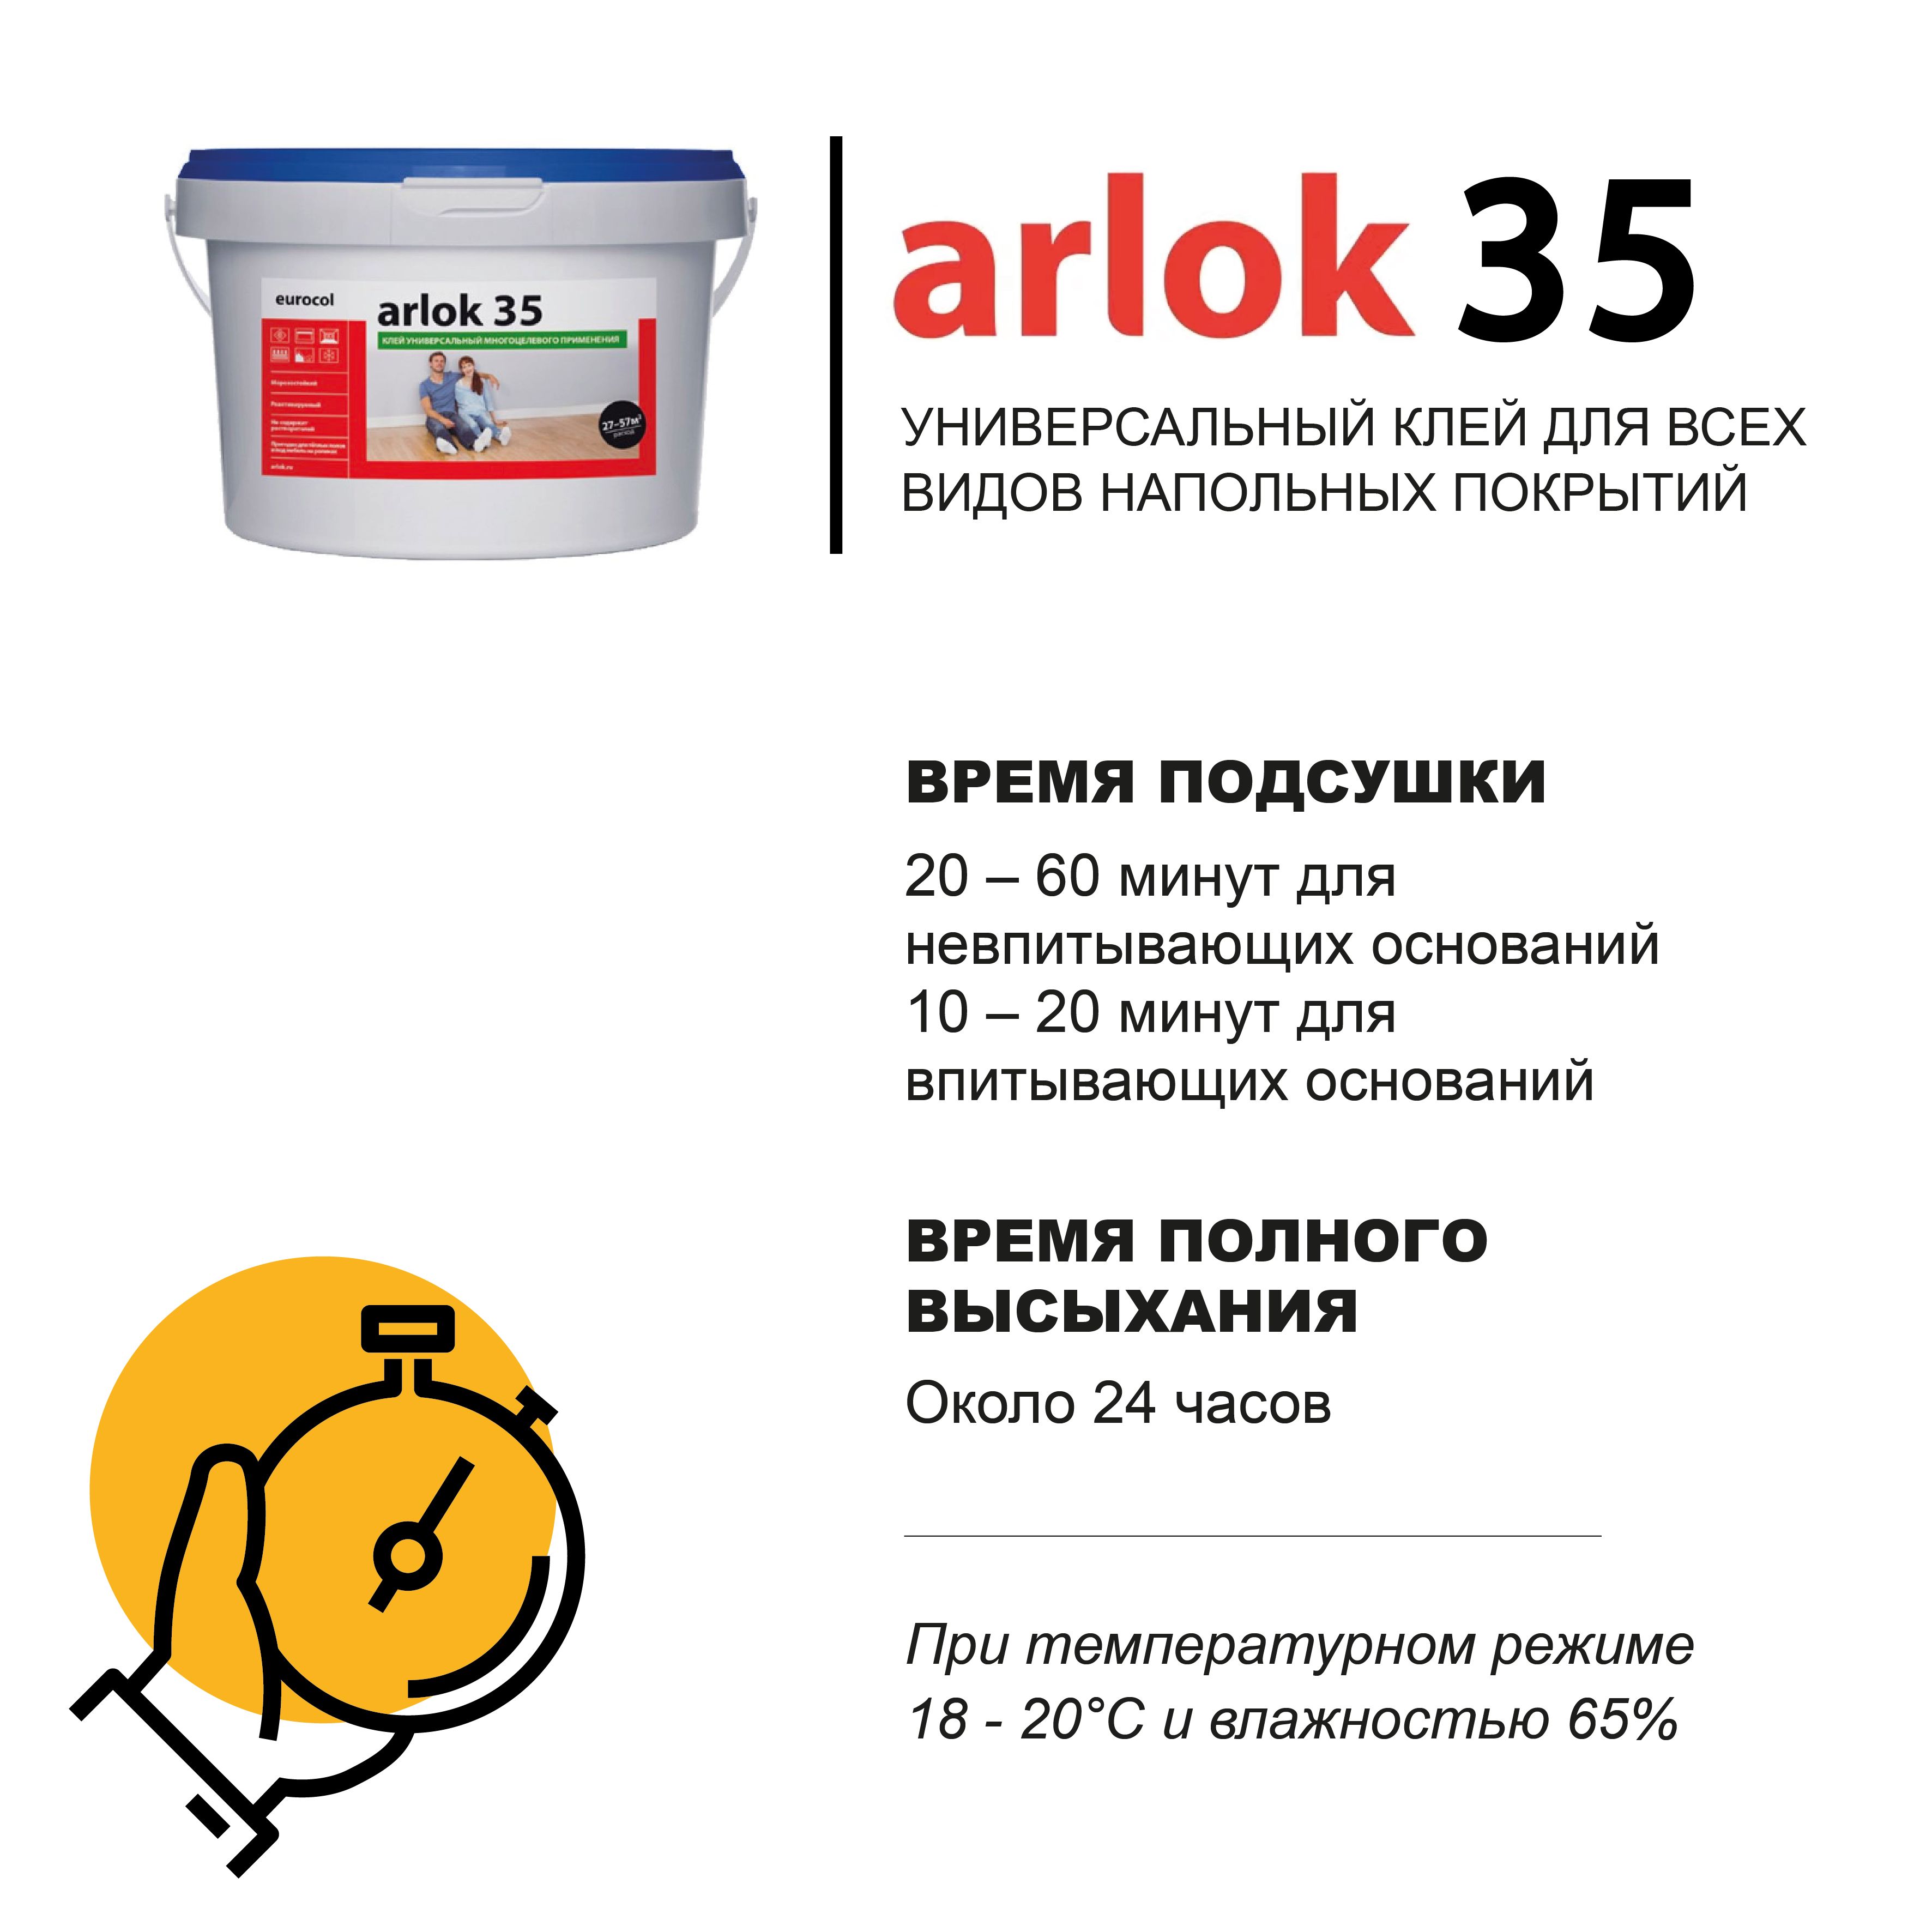 Клей тим 35. Клей Arlok 35. Клей для кварцвиниловой плитки Arlok 35. Тим 35 клей для плитки. Клей для виниловой плитки для пола Arlok 35.